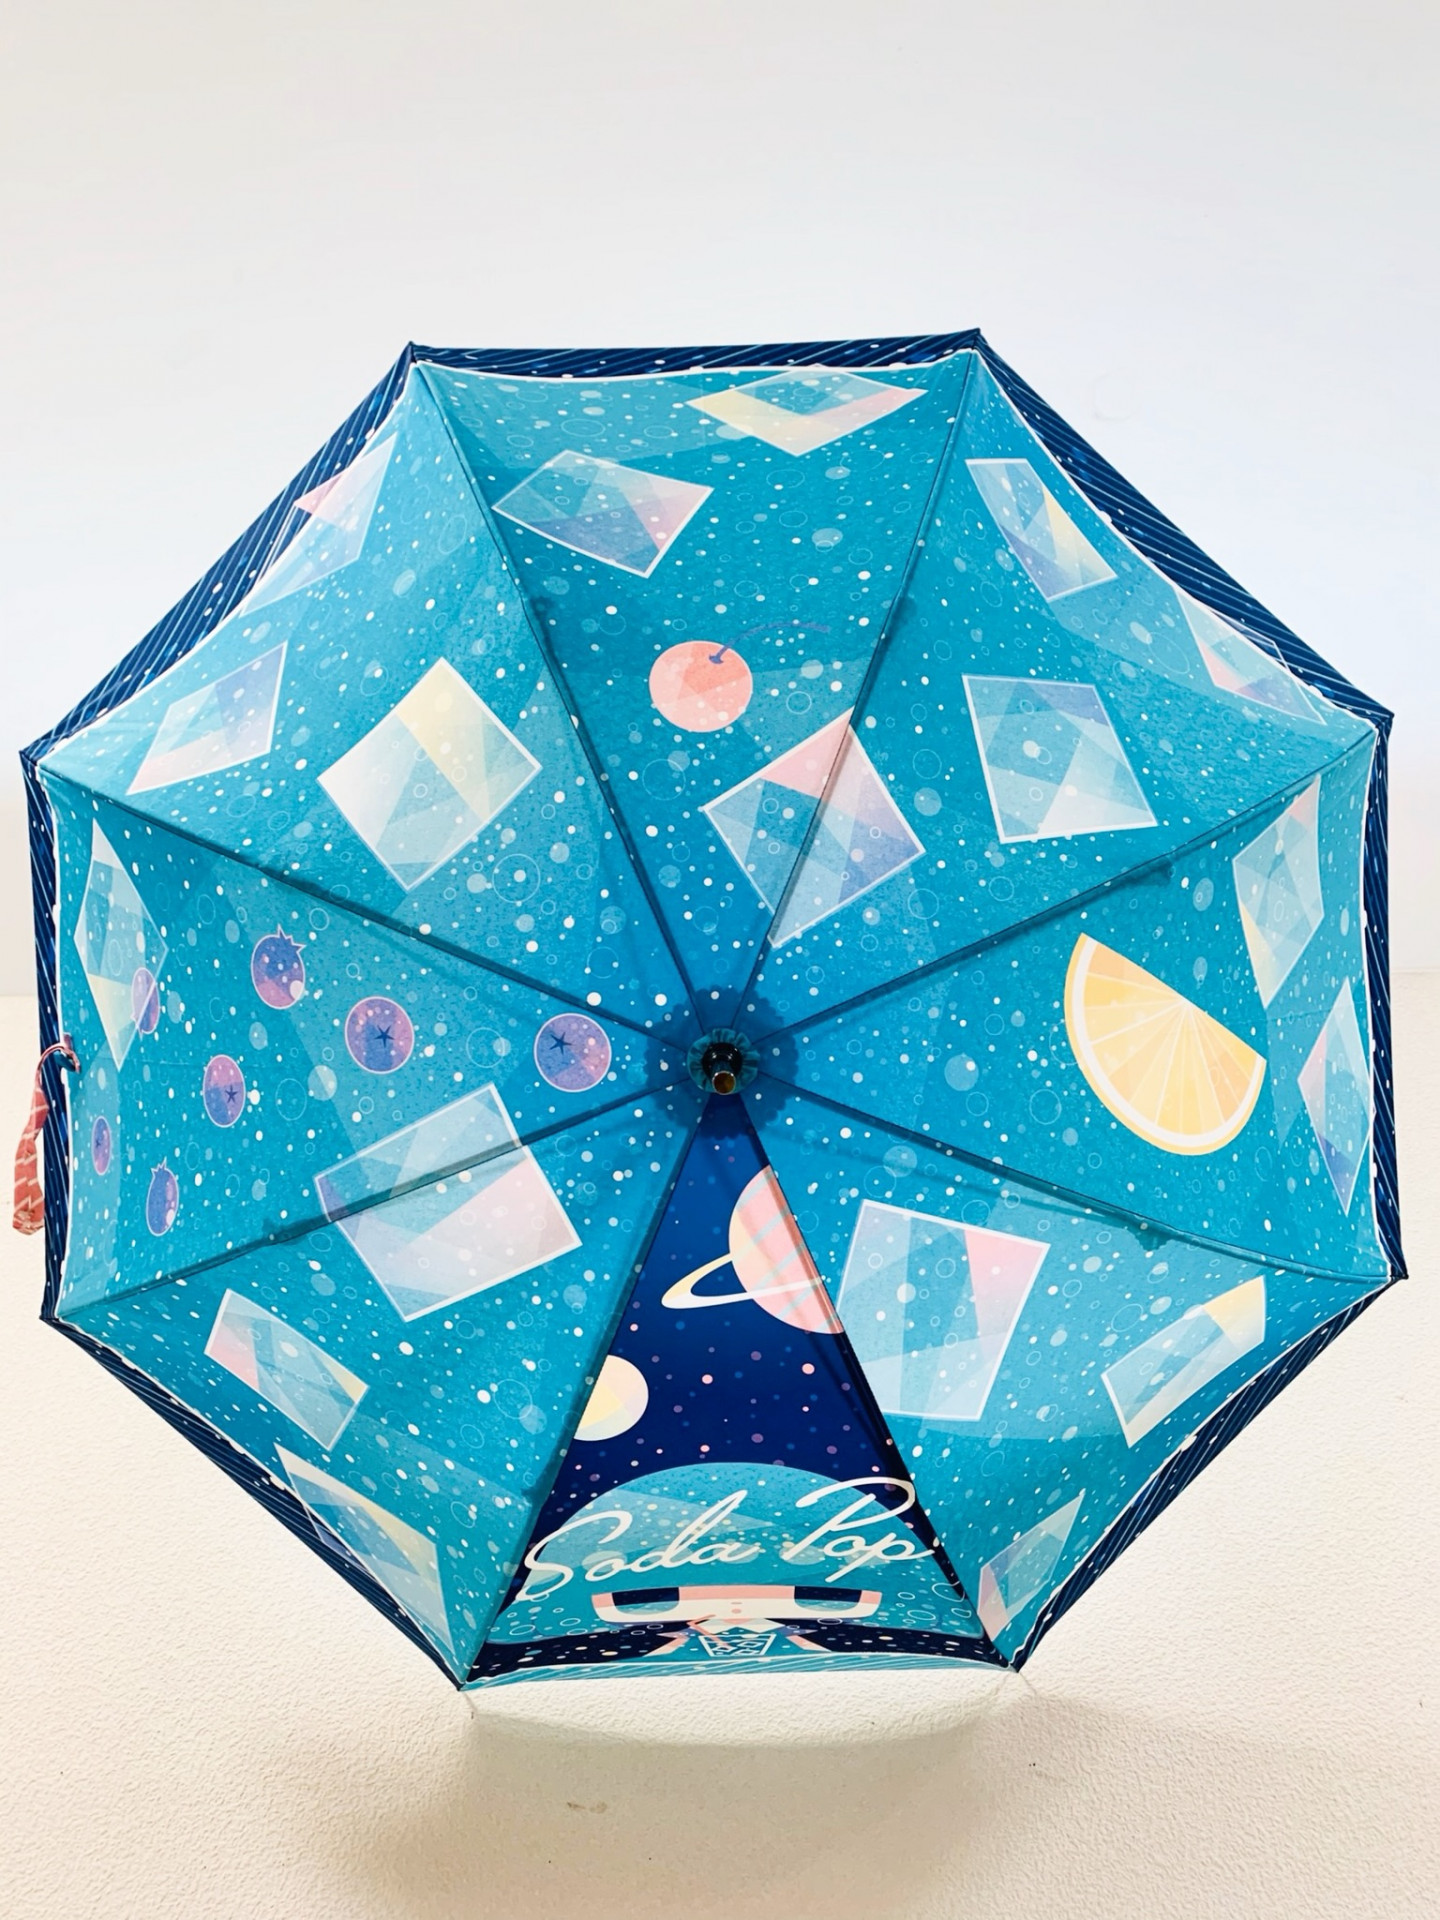 世界に一つだけのオリジナリティーあふれる着物傘やアート傘